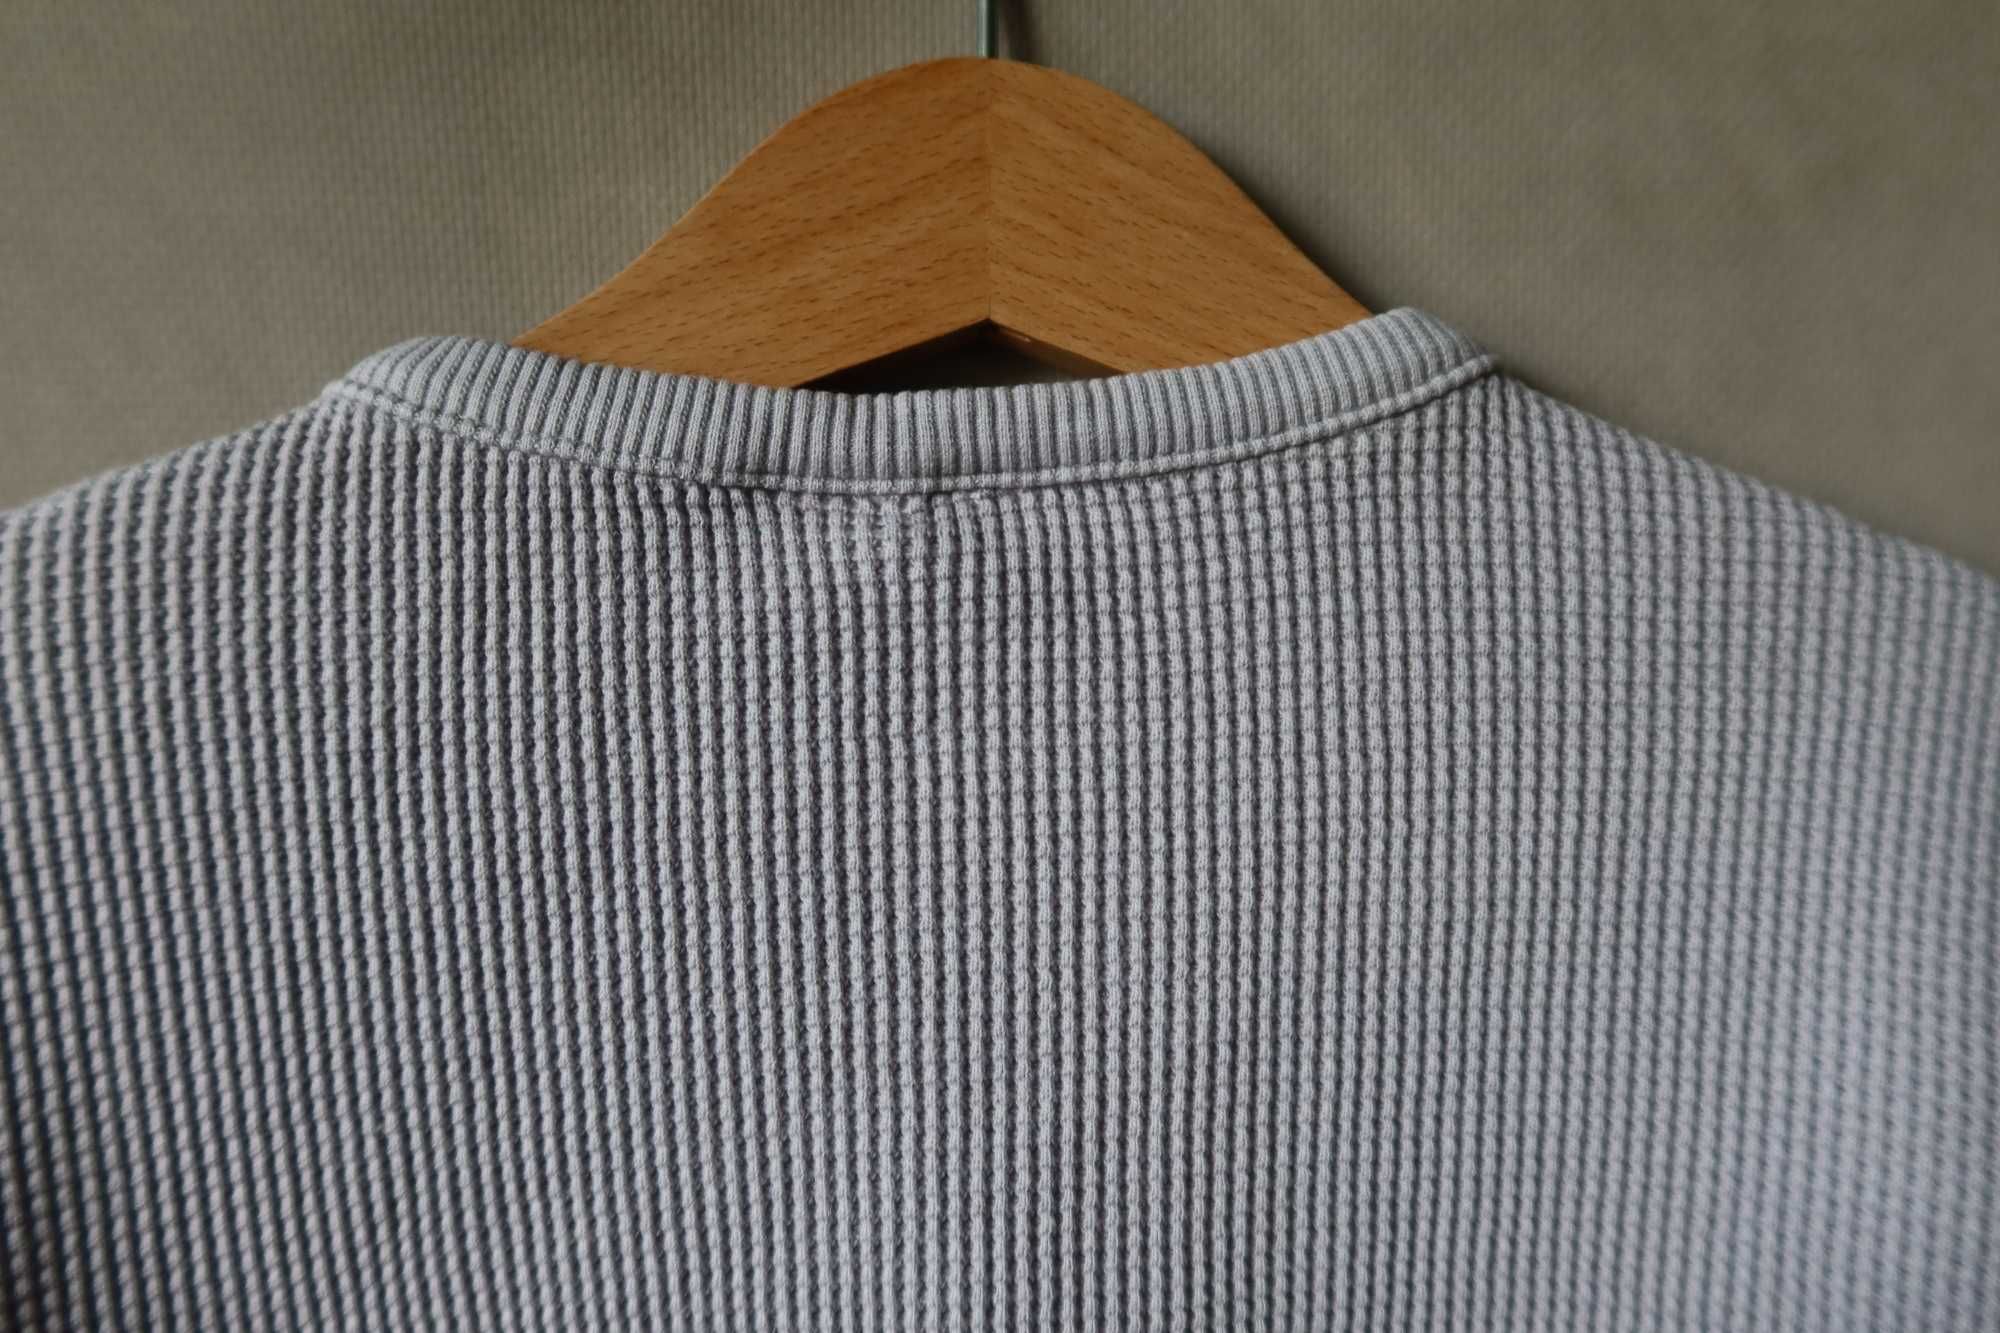 Bluza ZARA 98 szara wafelkowa z kieszonką fason oversize